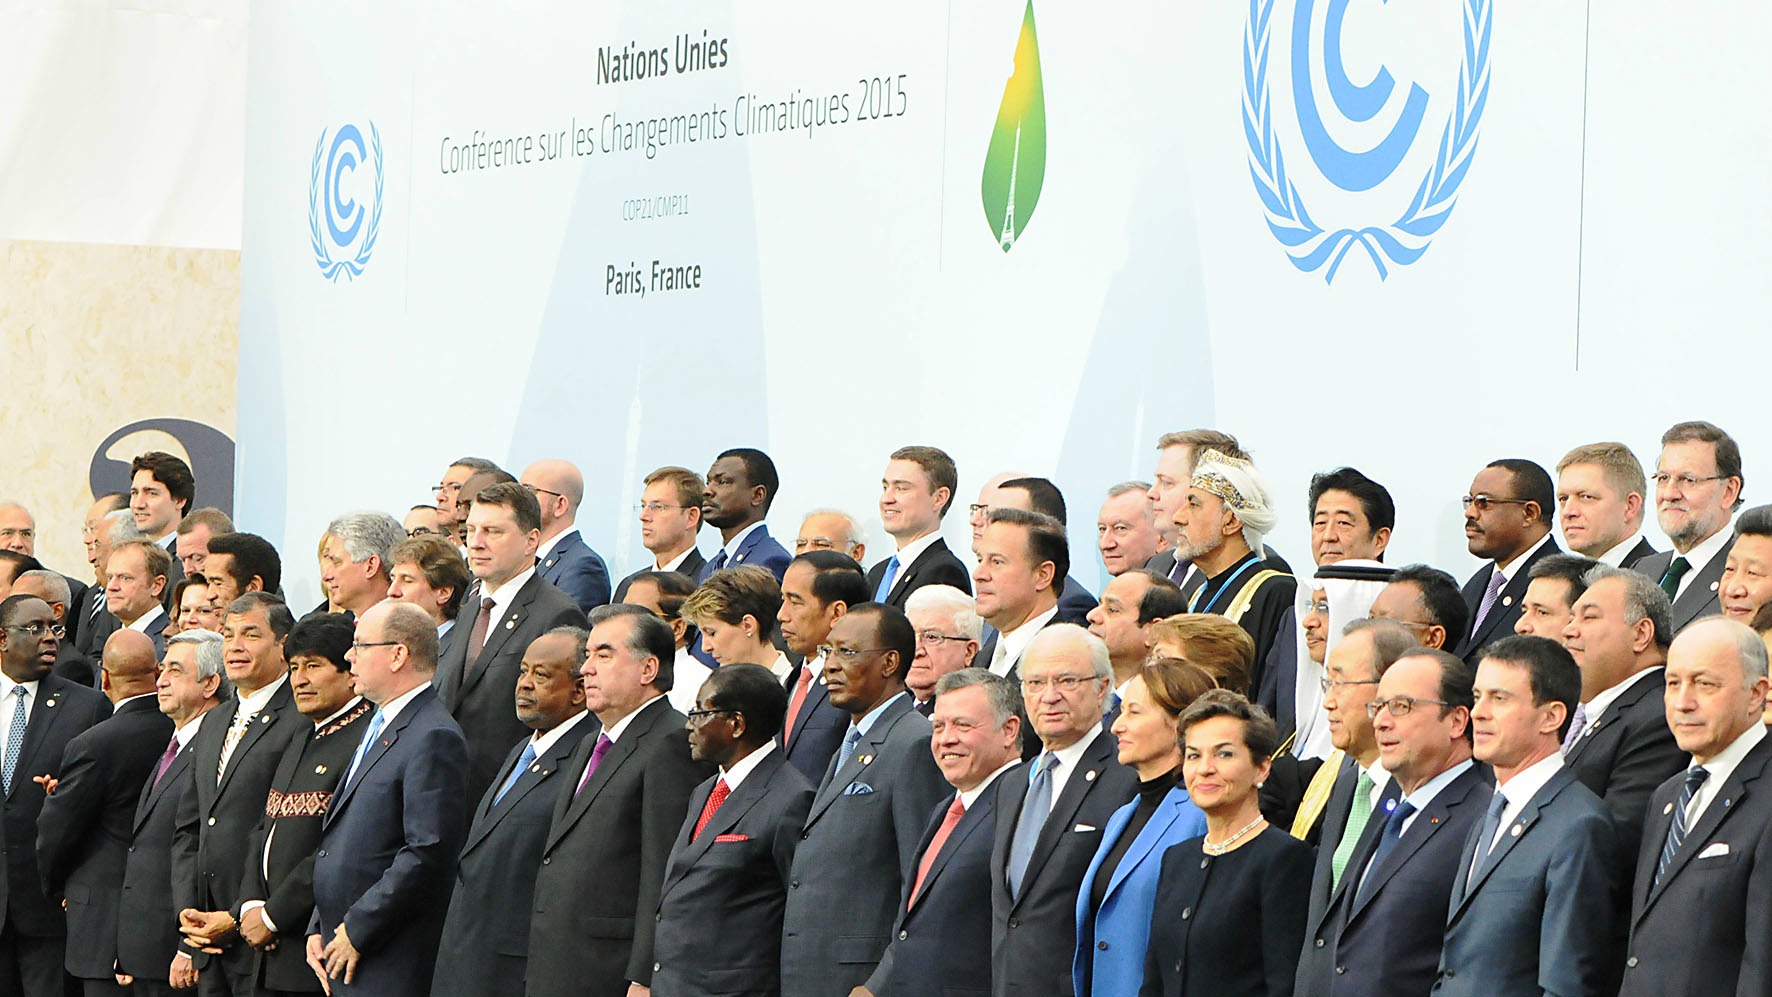 Les chefs d'Etats ont signés, à Paris, un accord qualifié "d'historique" (Photo:ConexionCOP/Flickr/CC BY 2.0)